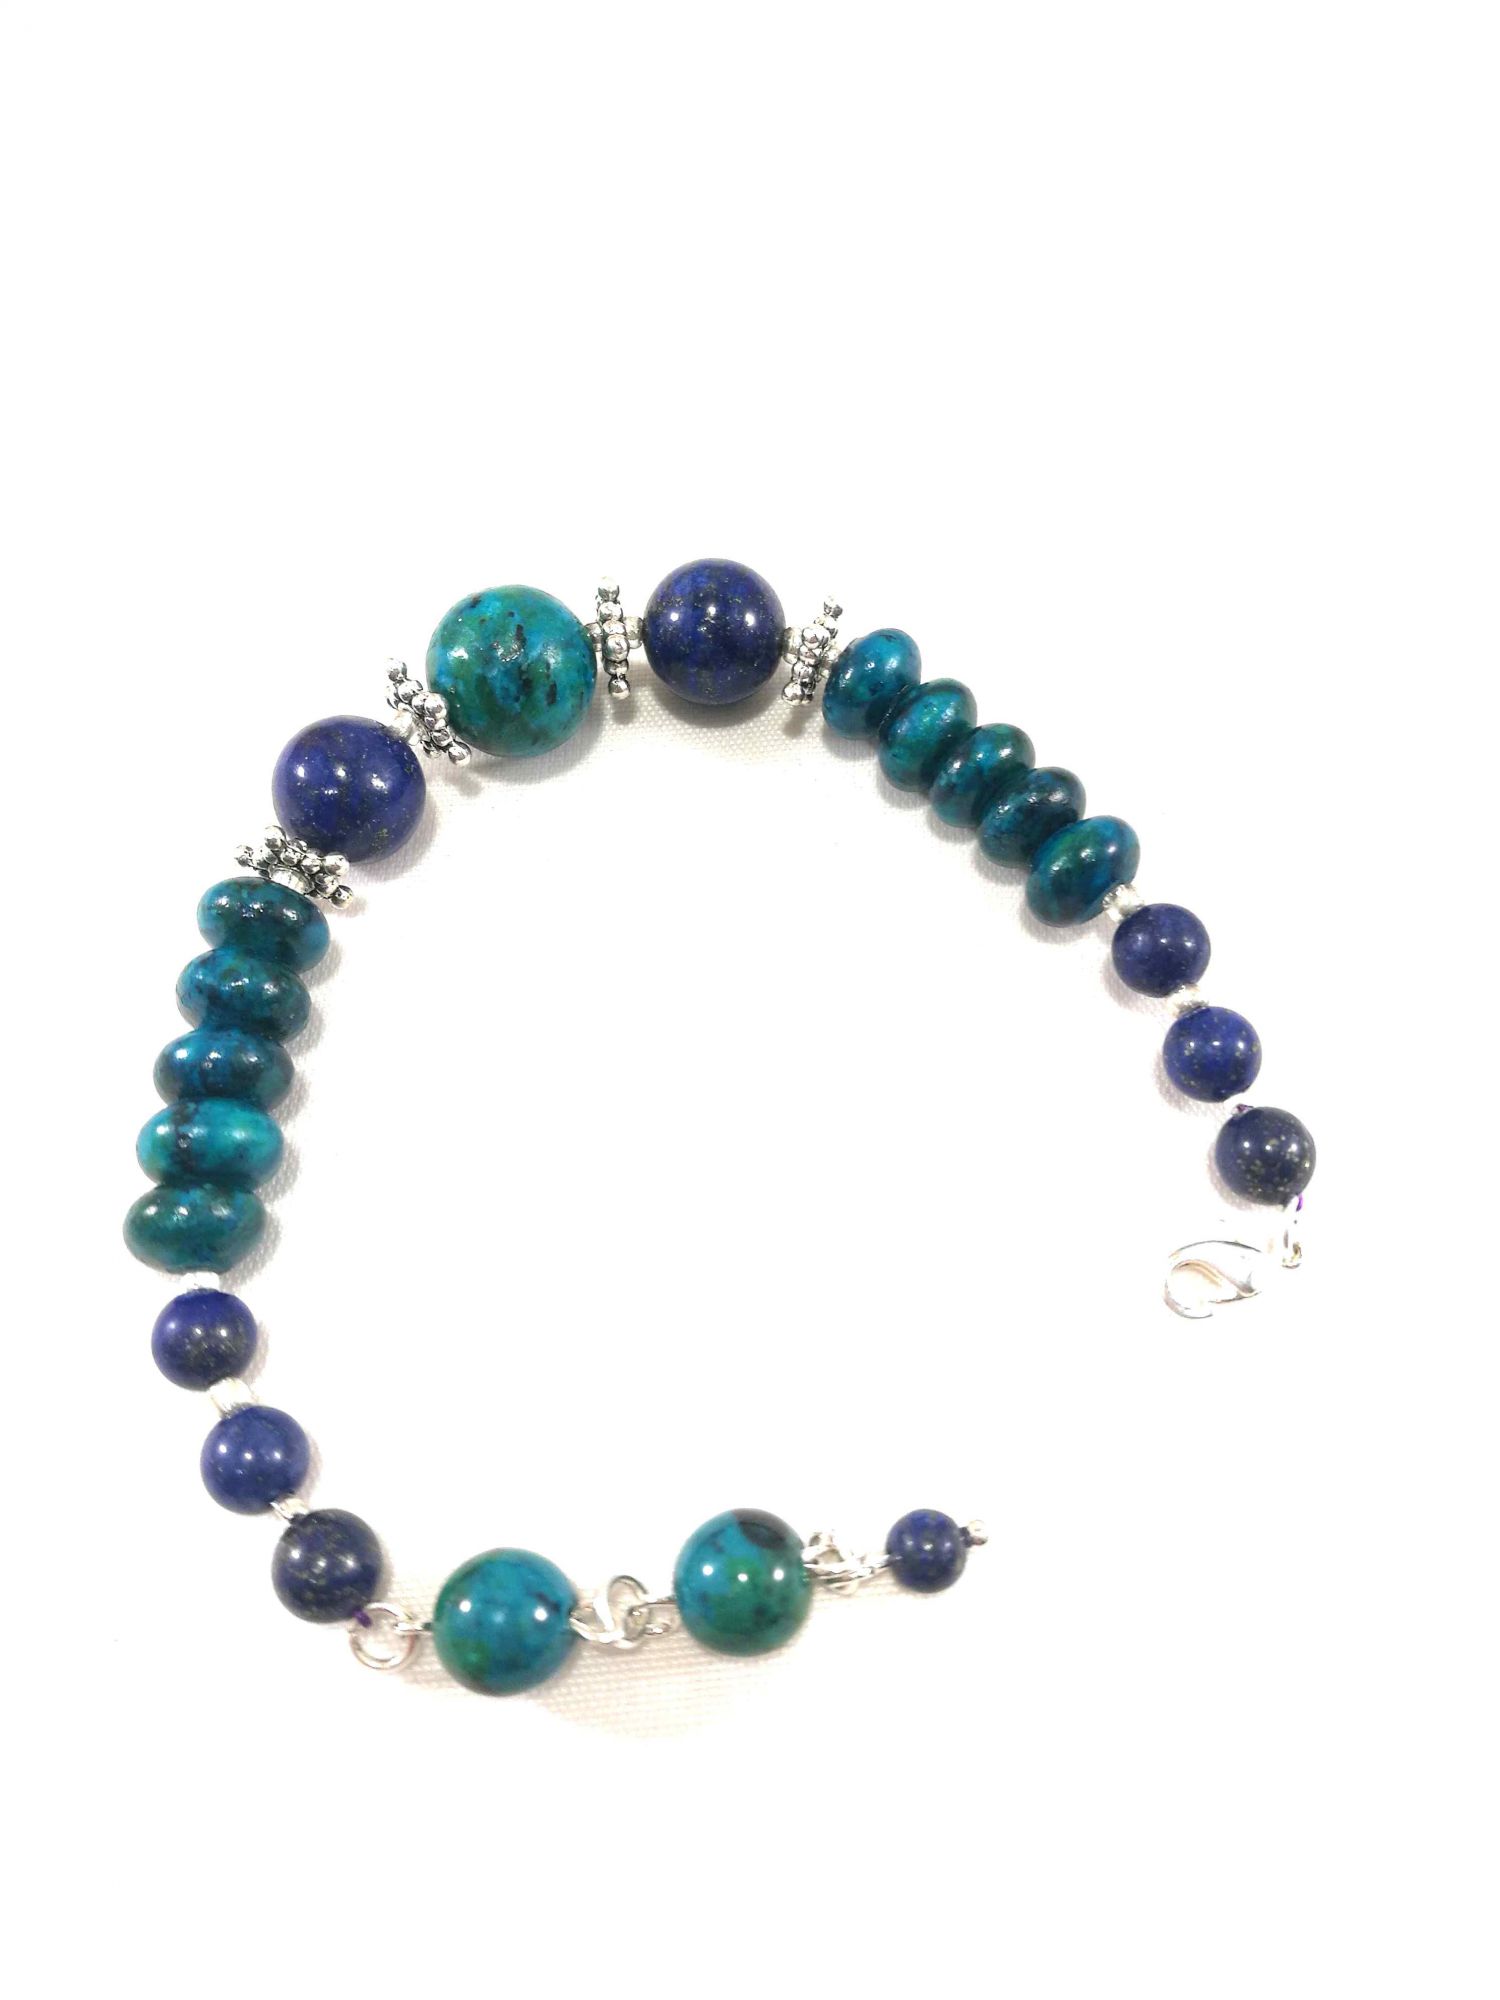 bracelet-turquoise-et-bleu-en-chrysocolle-et-lapis-lazuli-plaque-argent-brtm-24